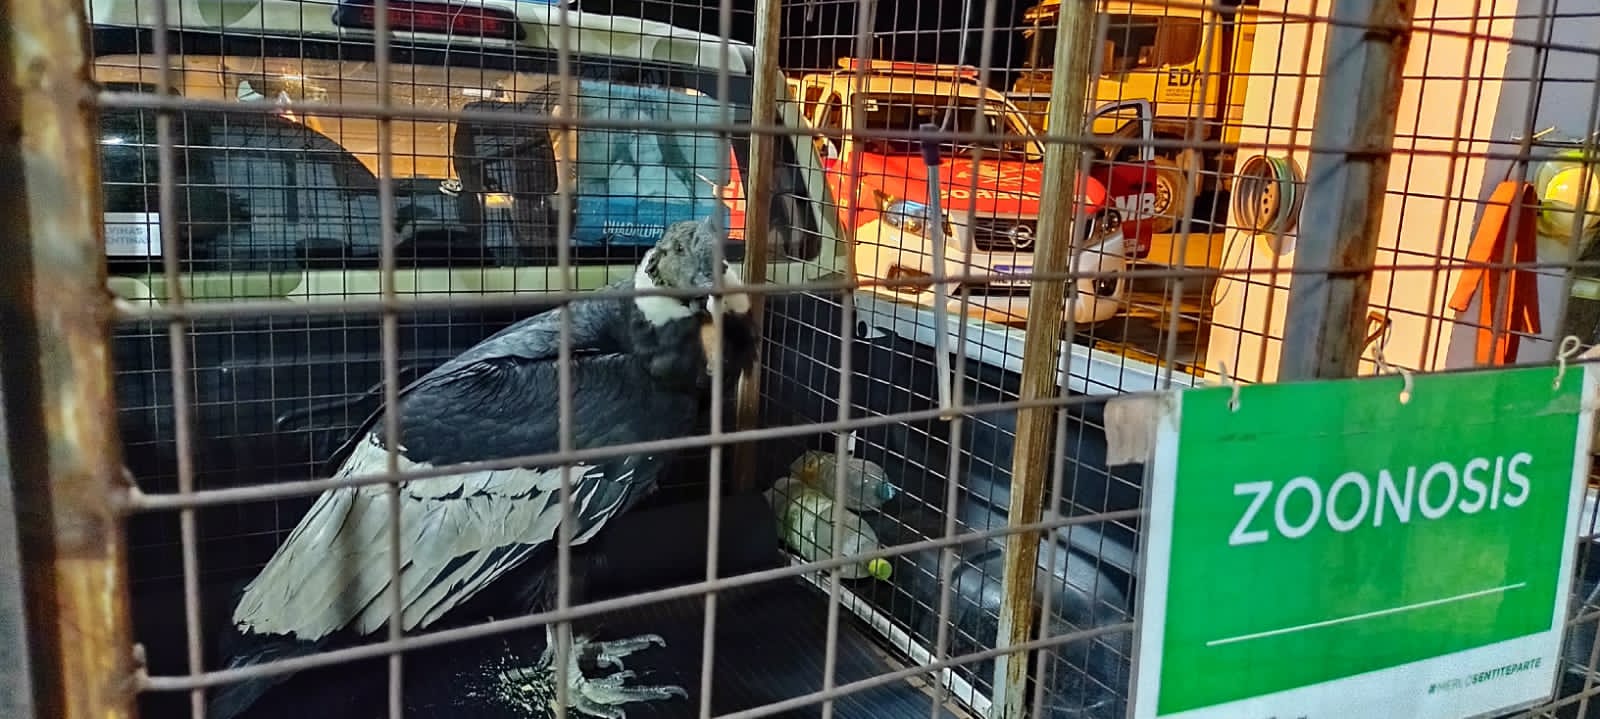 El Condor en el jaulon de Zoonosis municipal